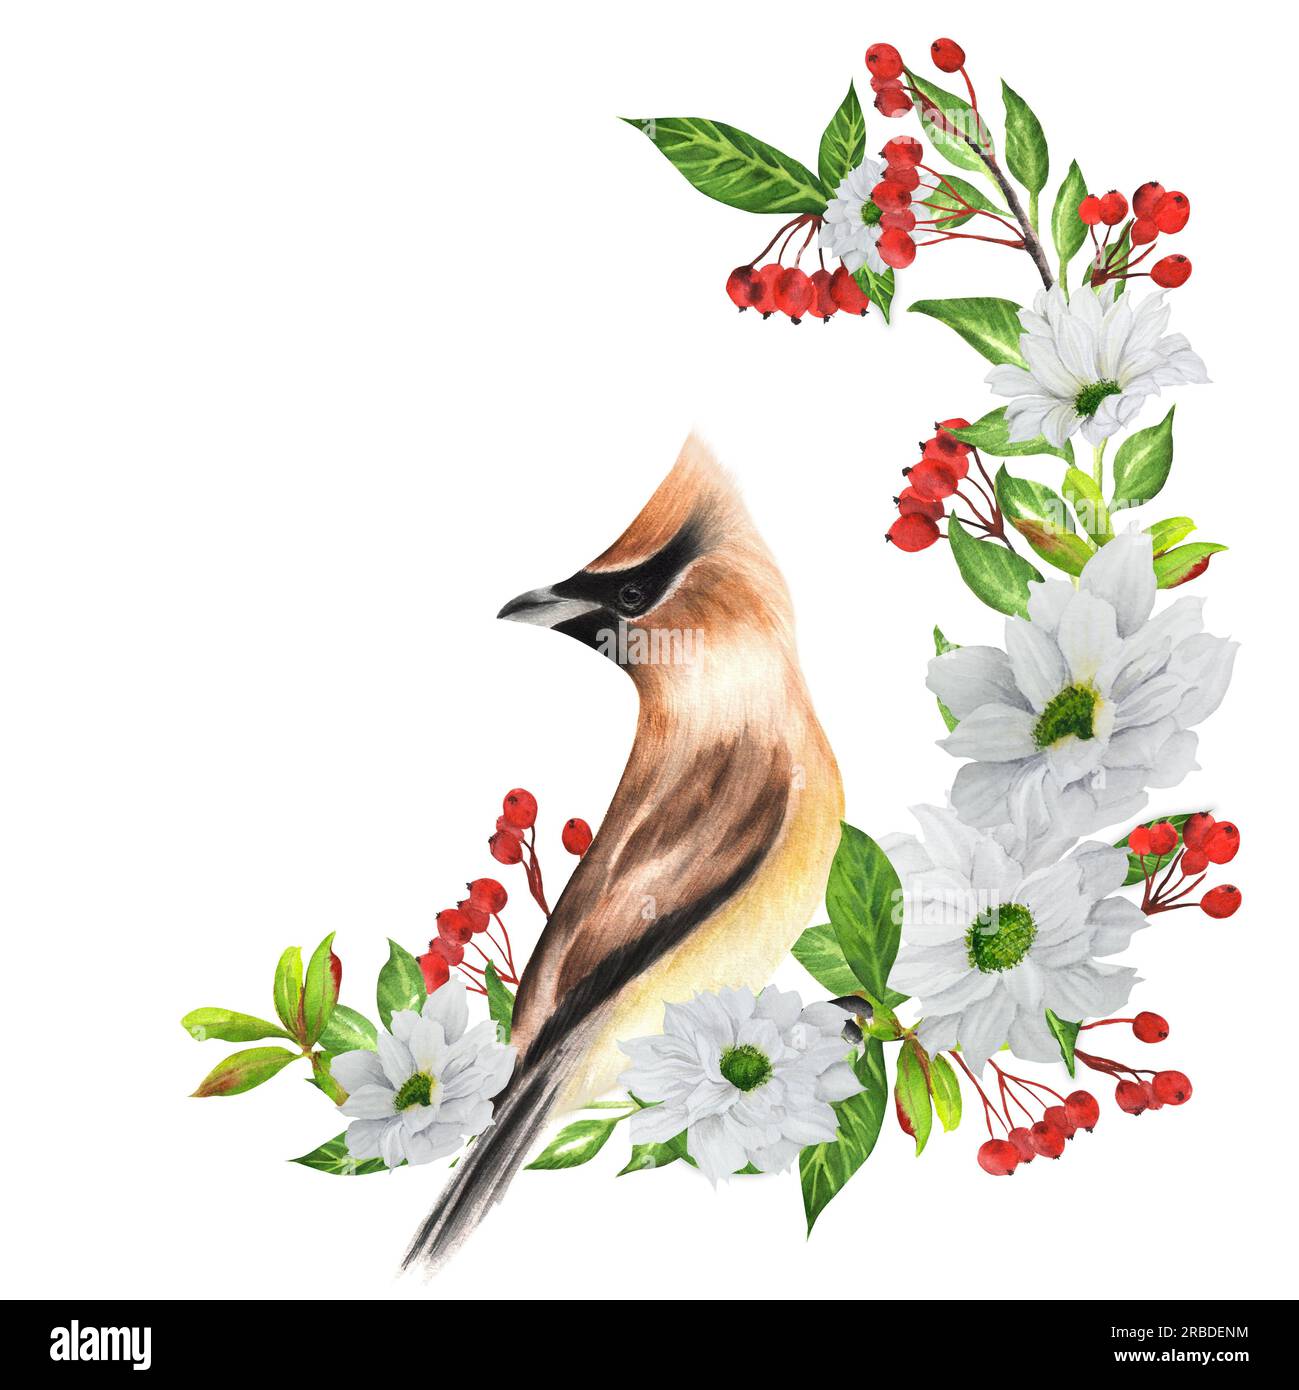 Illustration à l'aquarelle dessinée à la main avec oiseau en waxailleavec des fleurs blanches et des baies rouges. Deux options - sur fond blanc et transparent. Banque D'Images